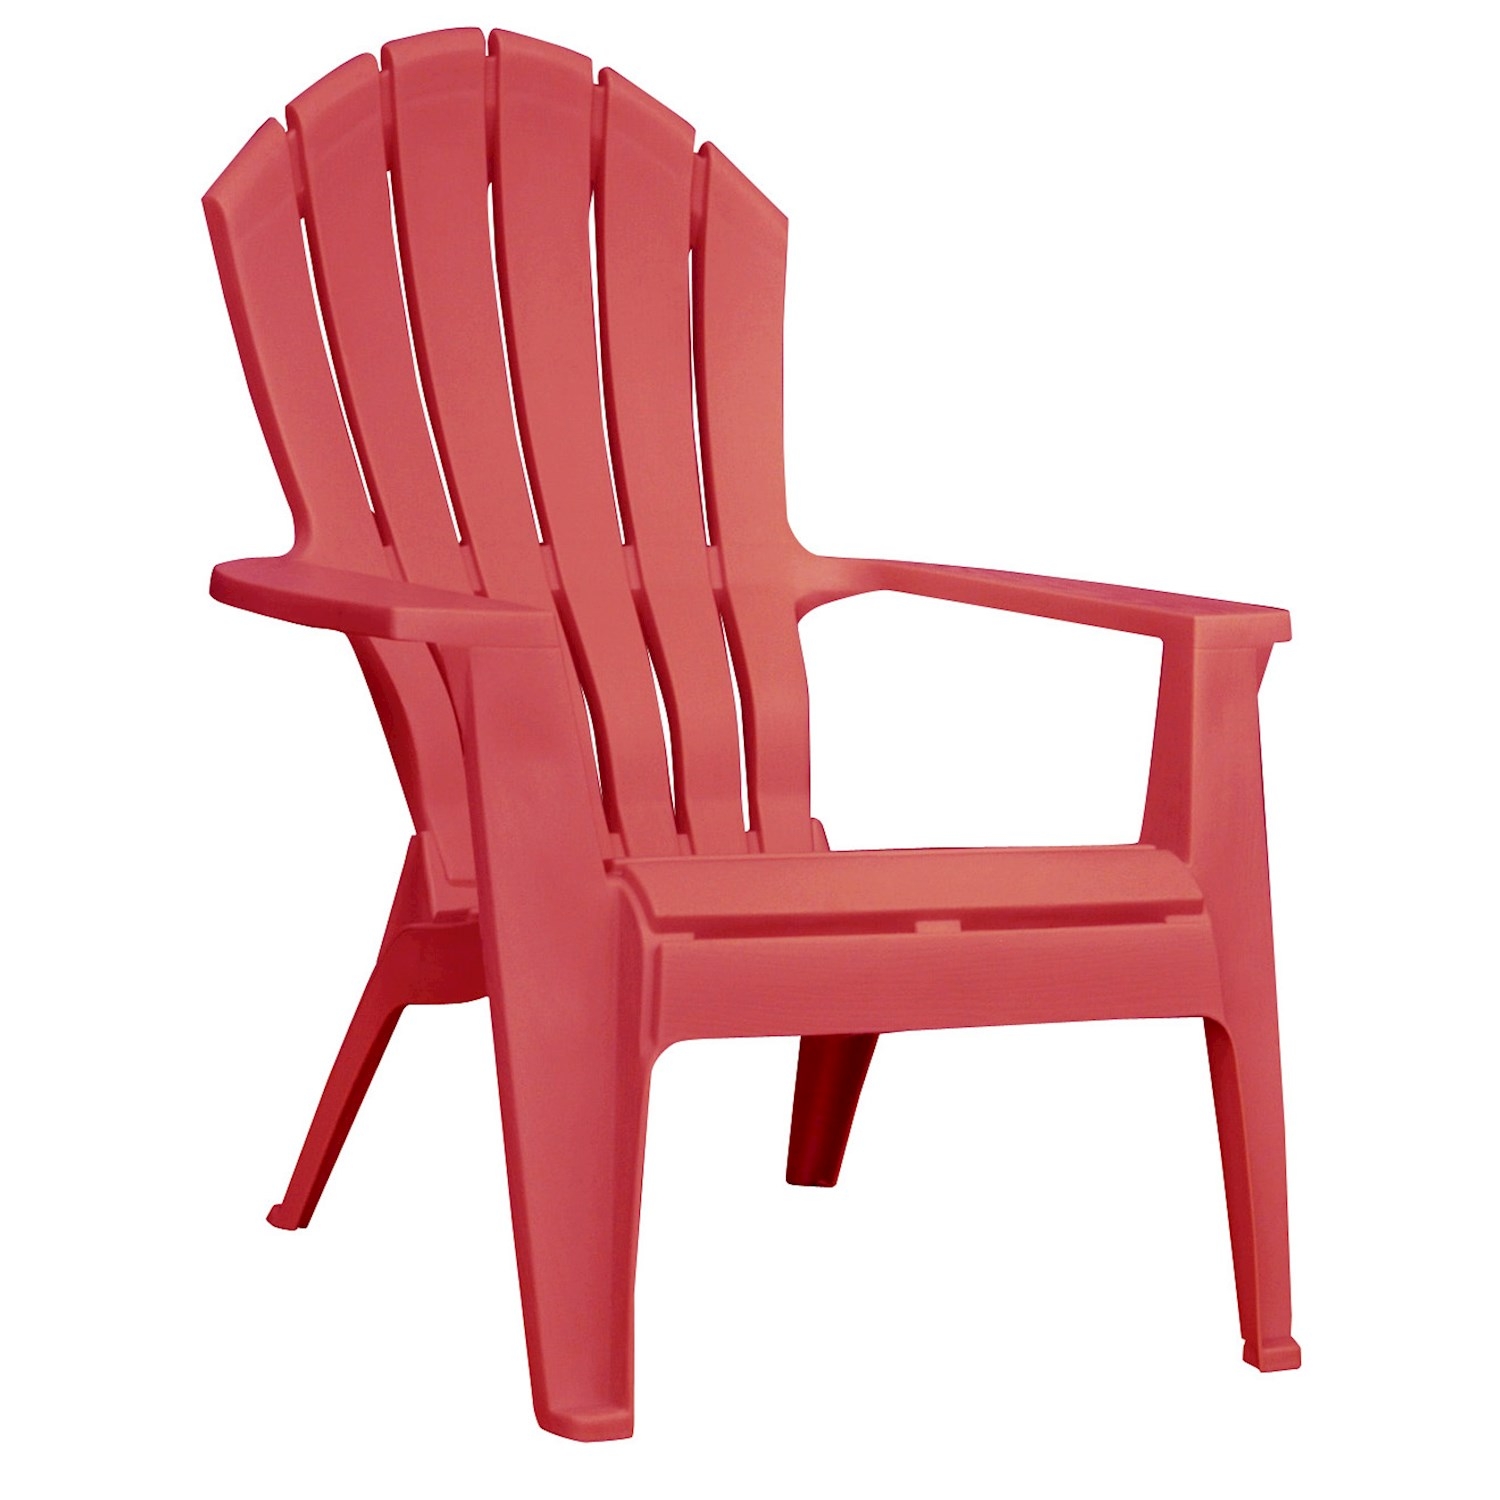 Resin adirondack chairs 1